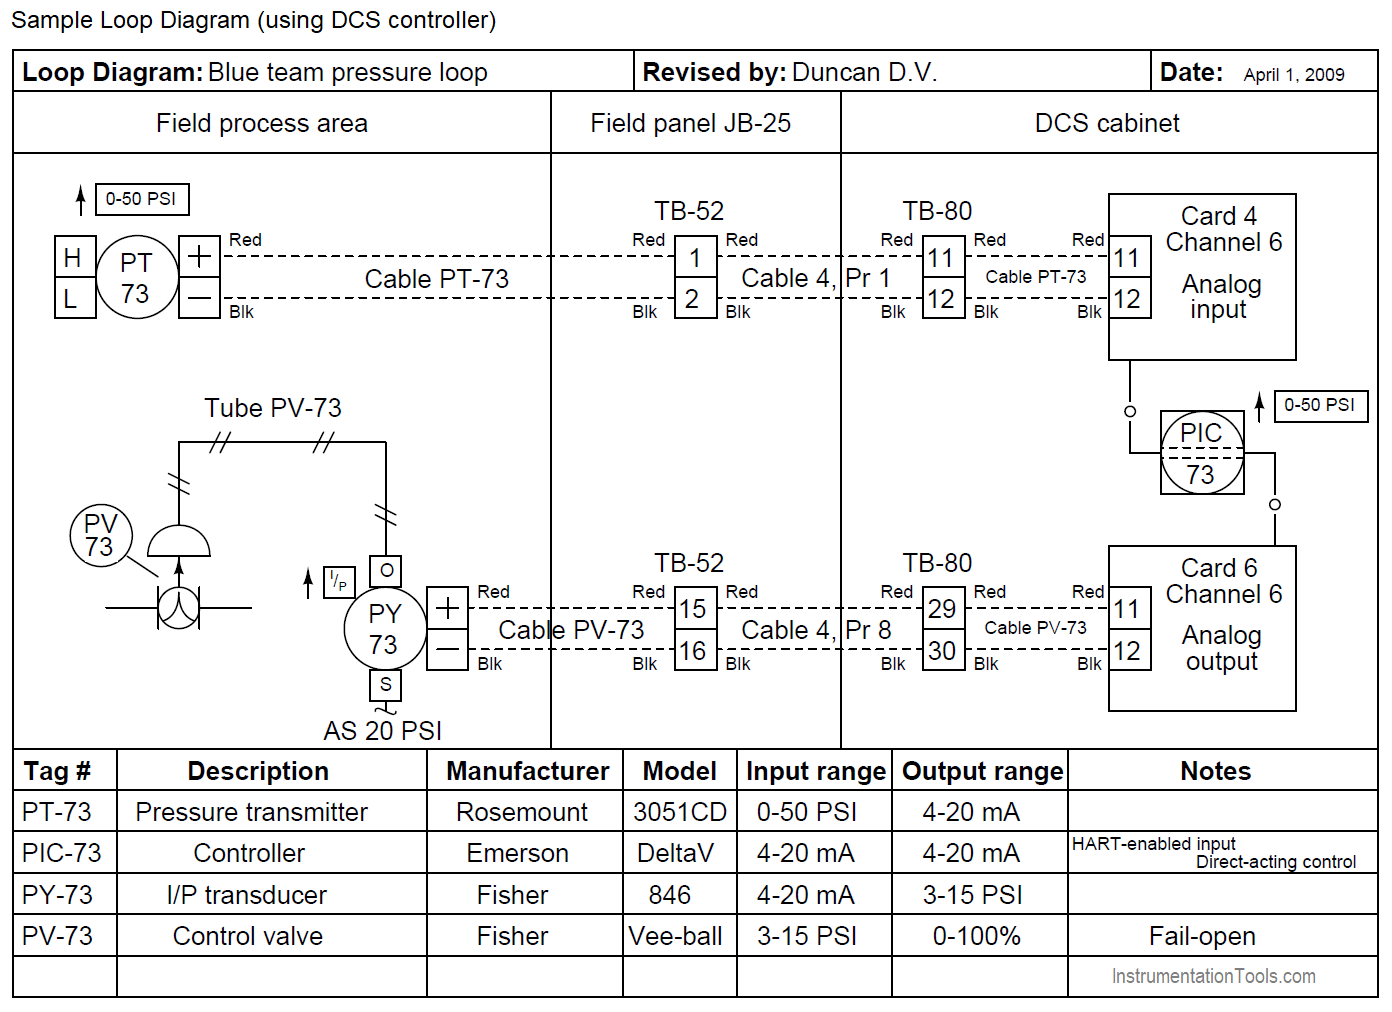 Loop Diagram using DCS controller